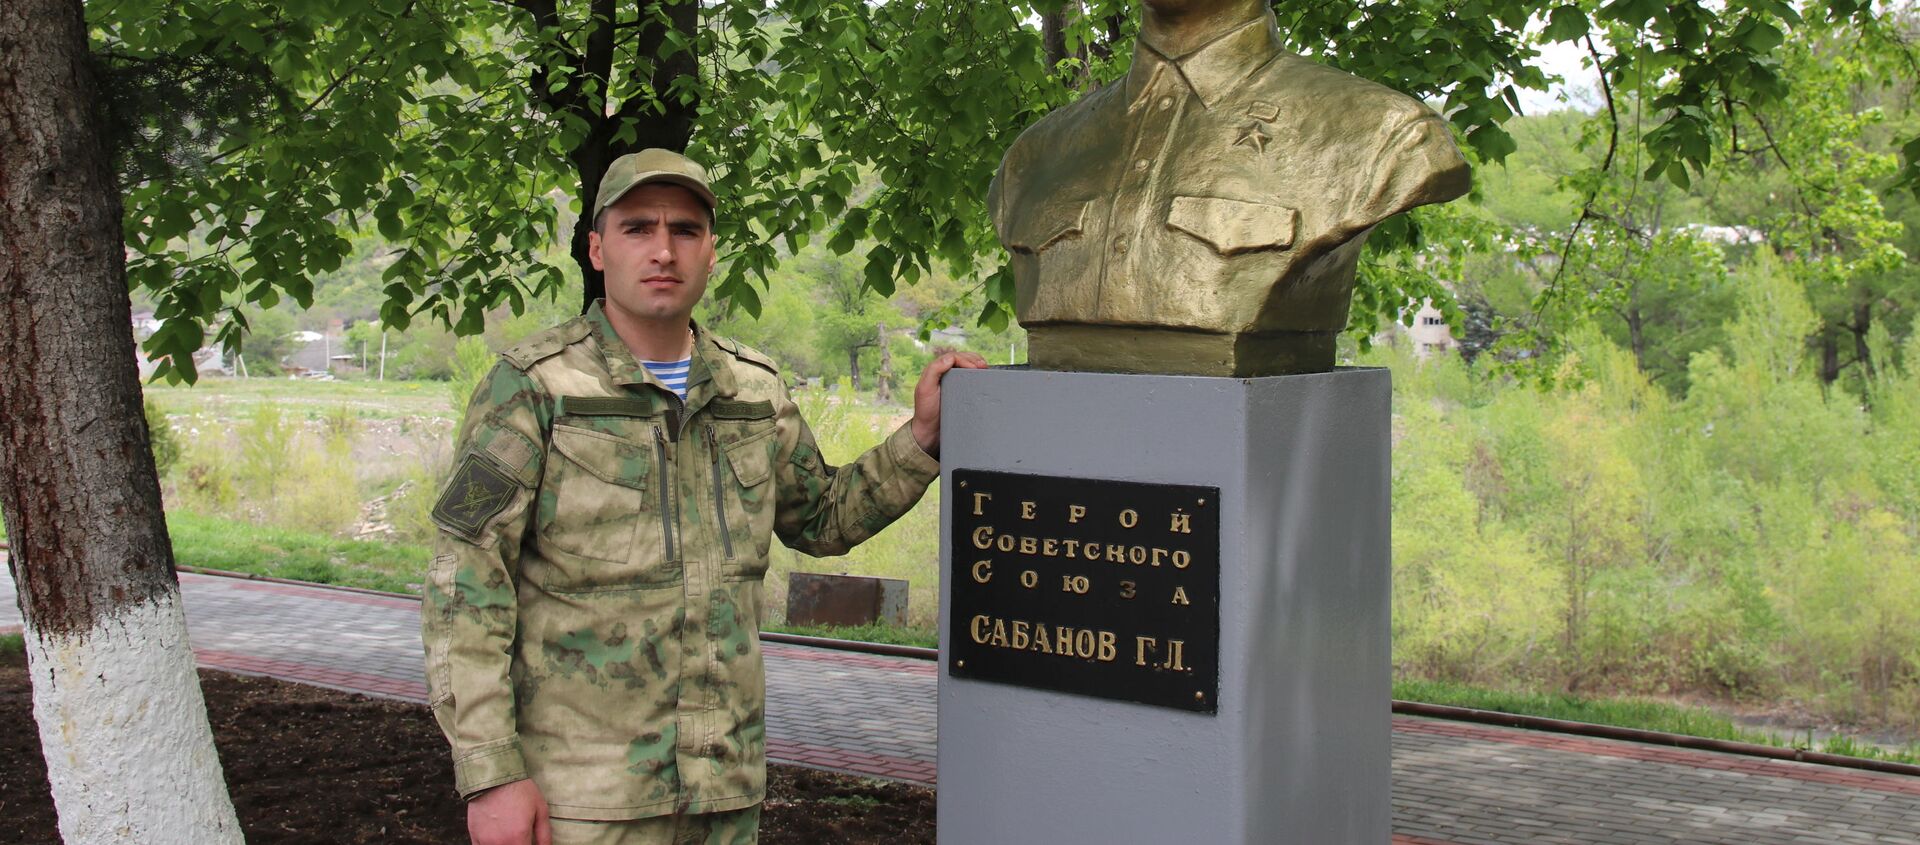 Инал Сабанов рядом с бюстом своего деда  - Sputnik Южная Осетия, 1920, 06.05.2020